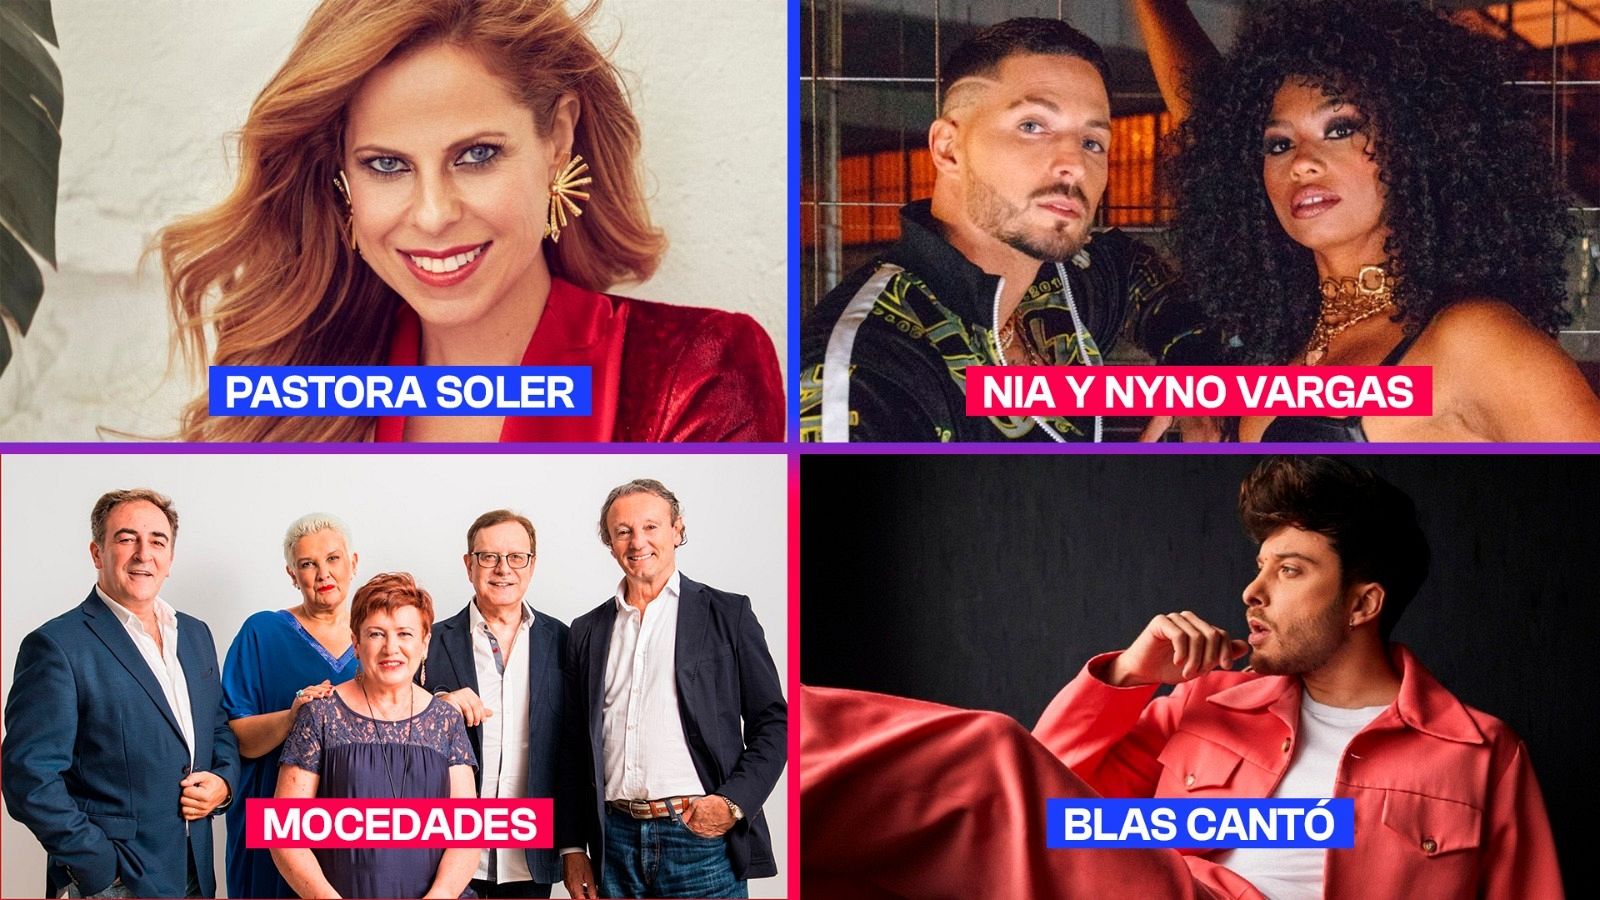 Pastora Soler, Mocedades, Blas Canto, Nia y Nyno Vargas, los artistas invitados de la Gran Semifinal del Benidorm Fest